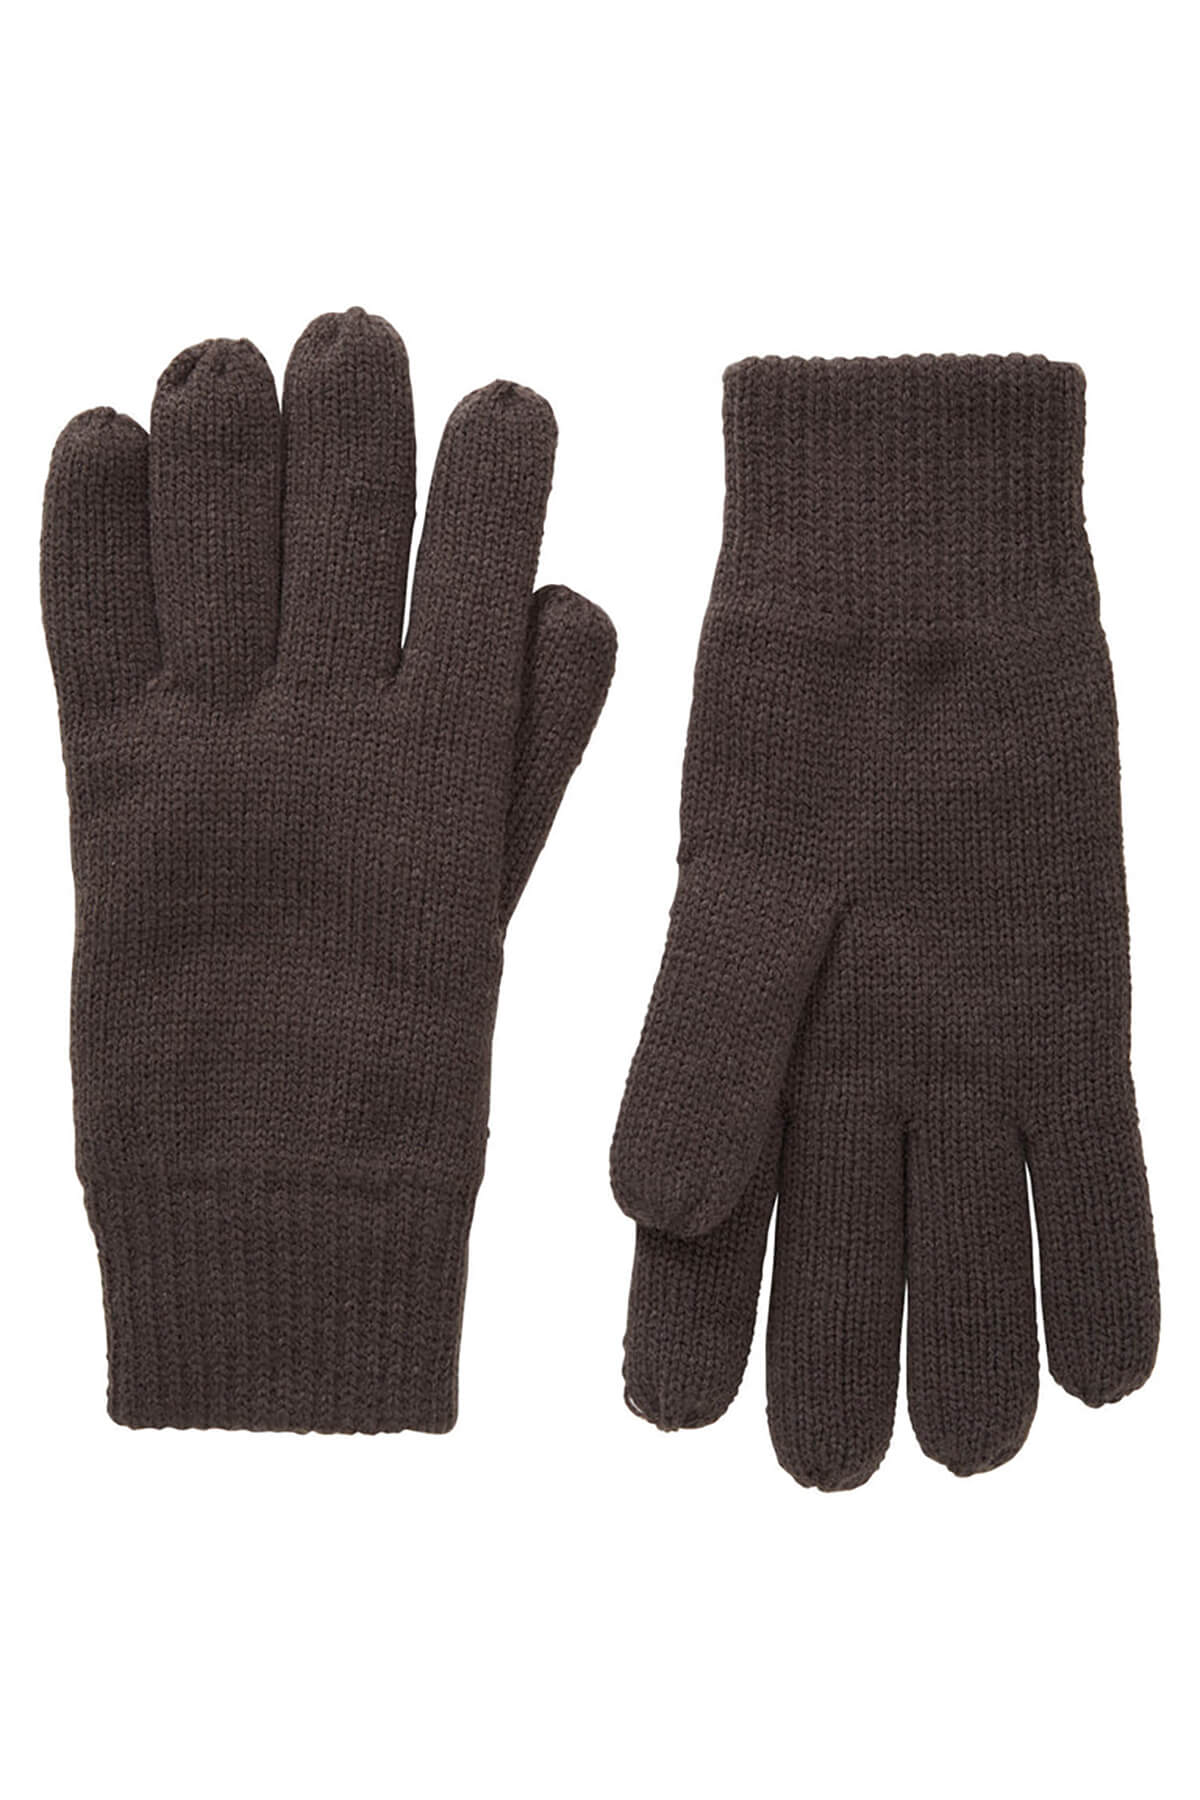 Petrol Industries Fine-Knit Gloves Pekin